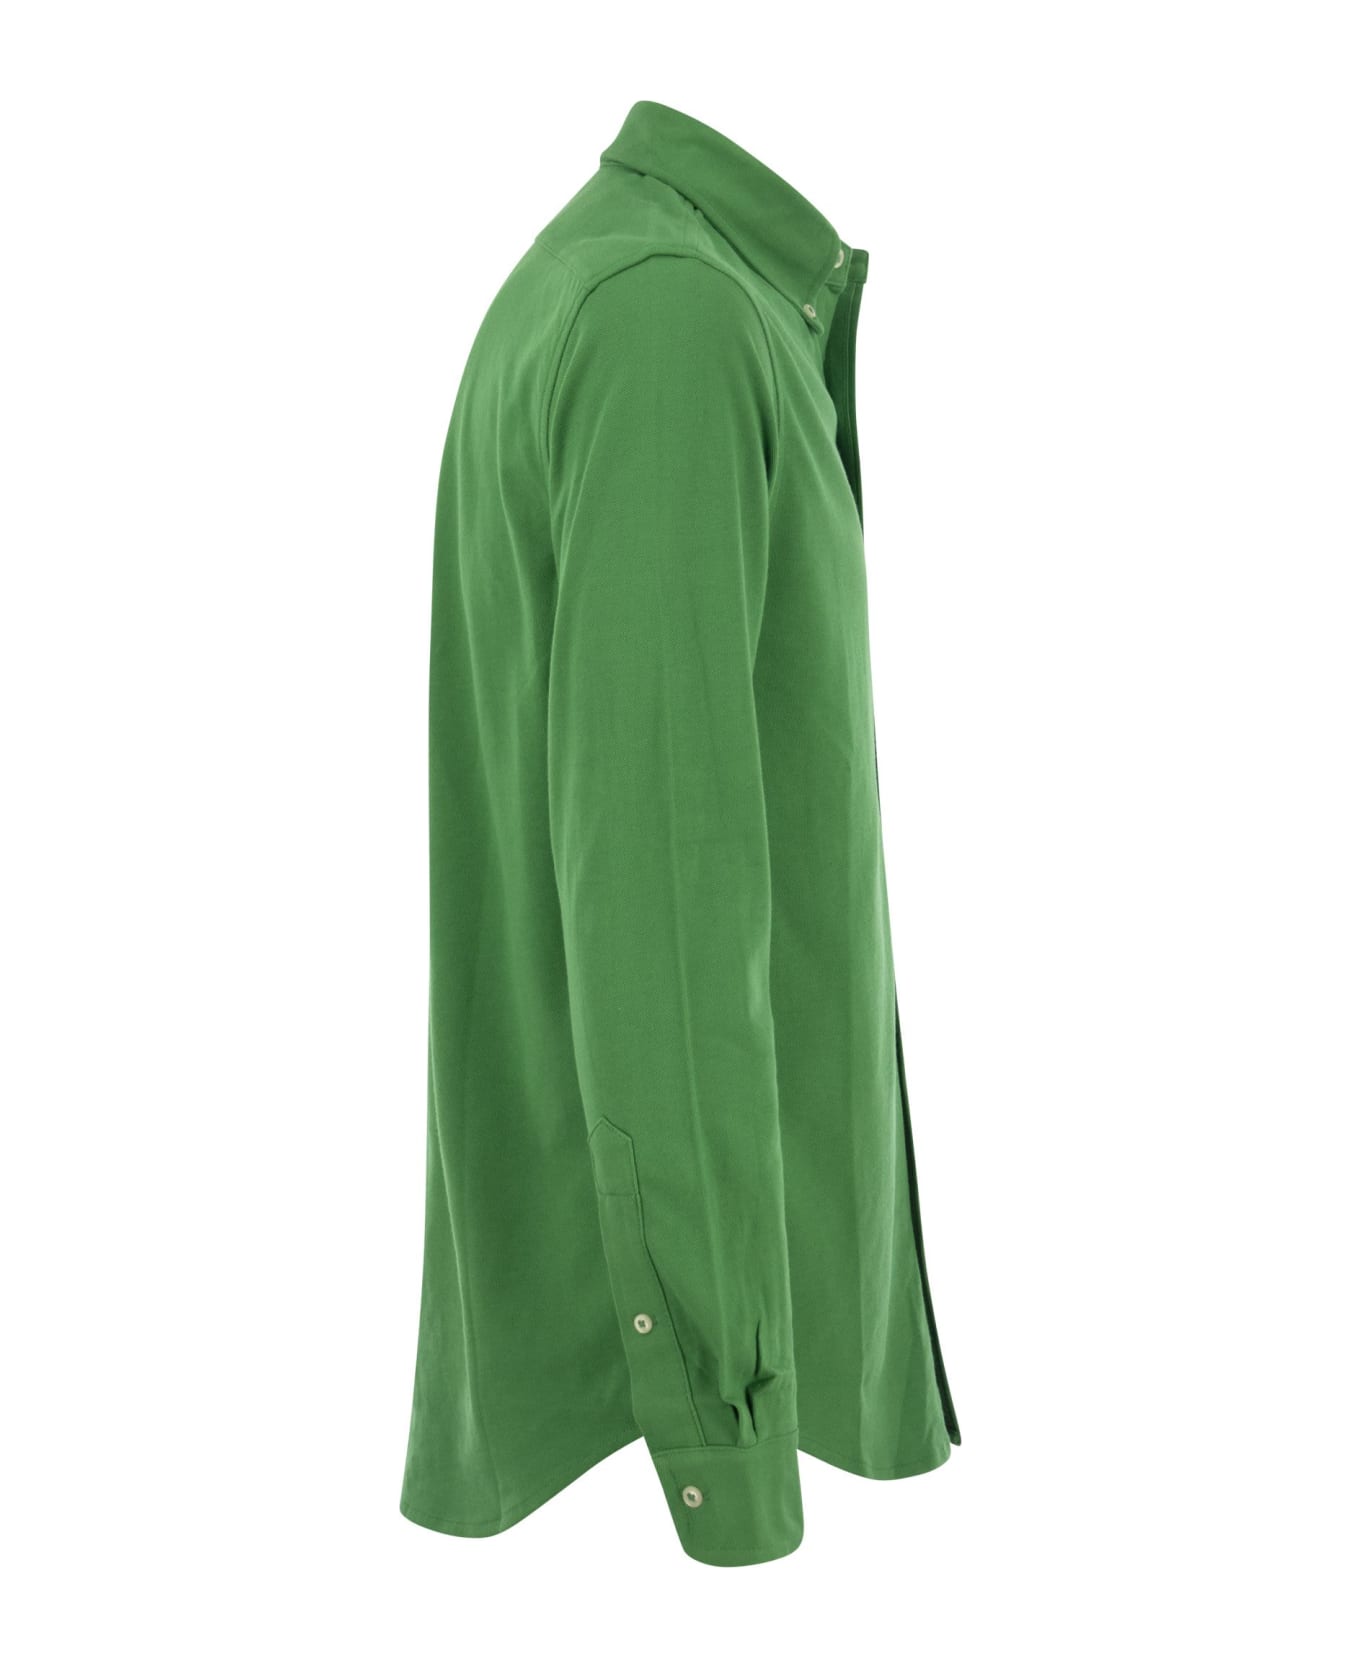 Polo Ralph Lauren Ultralight Pique Shirt - Green